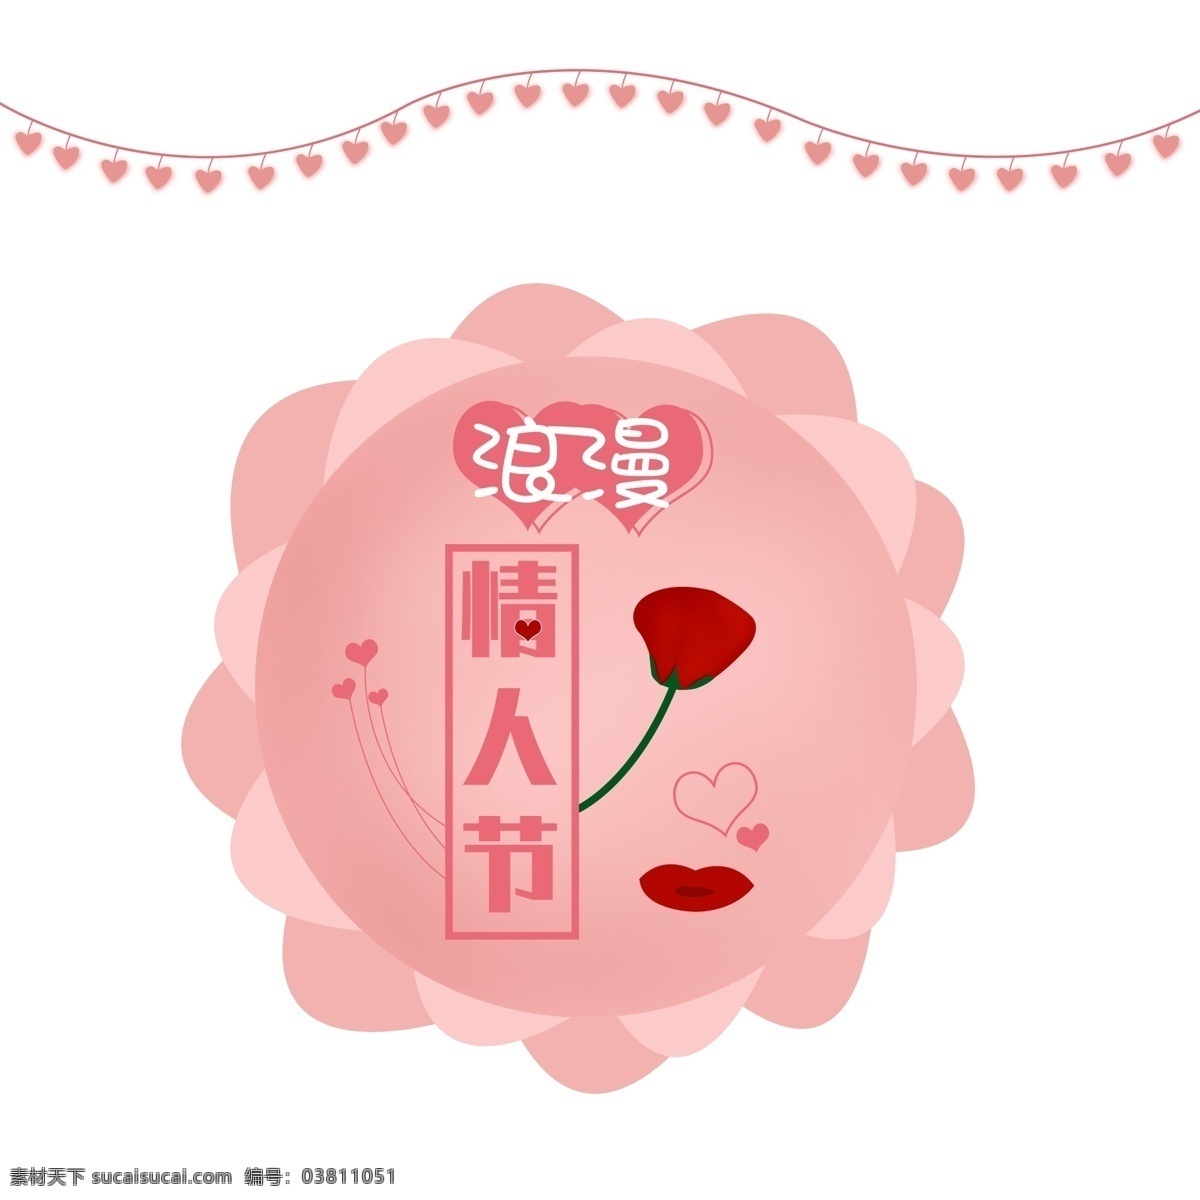 卡通 手绘 爱心 情人节 玫瑰 2019 年 月 日 红色玫瑰 粉色爱心 浪漫 爱人 粉色心心 二月十四日 爱情